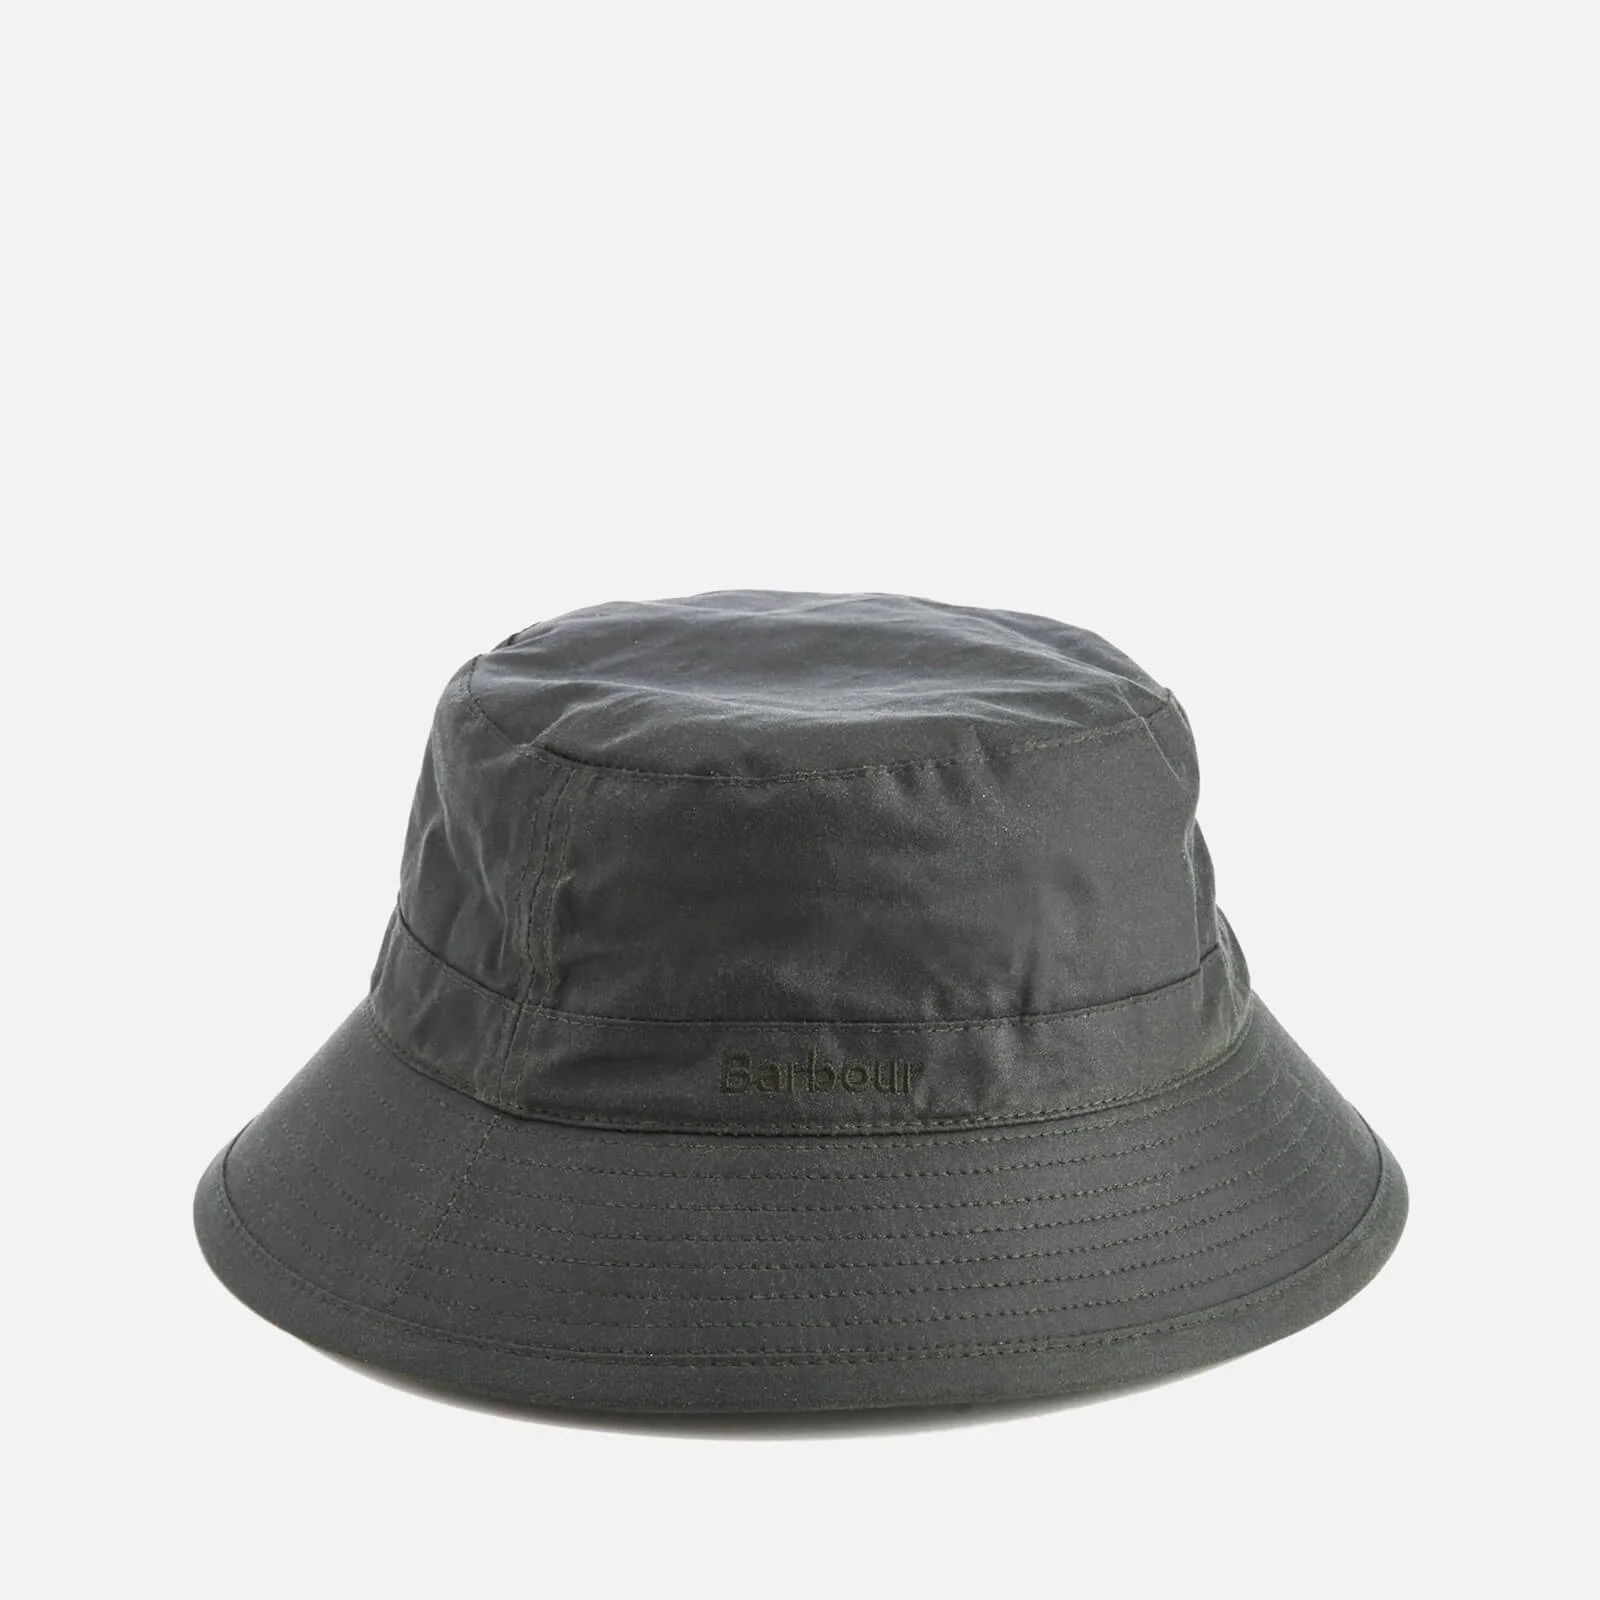 Barbour Men's Wax Sports Hat - Sage Image 1